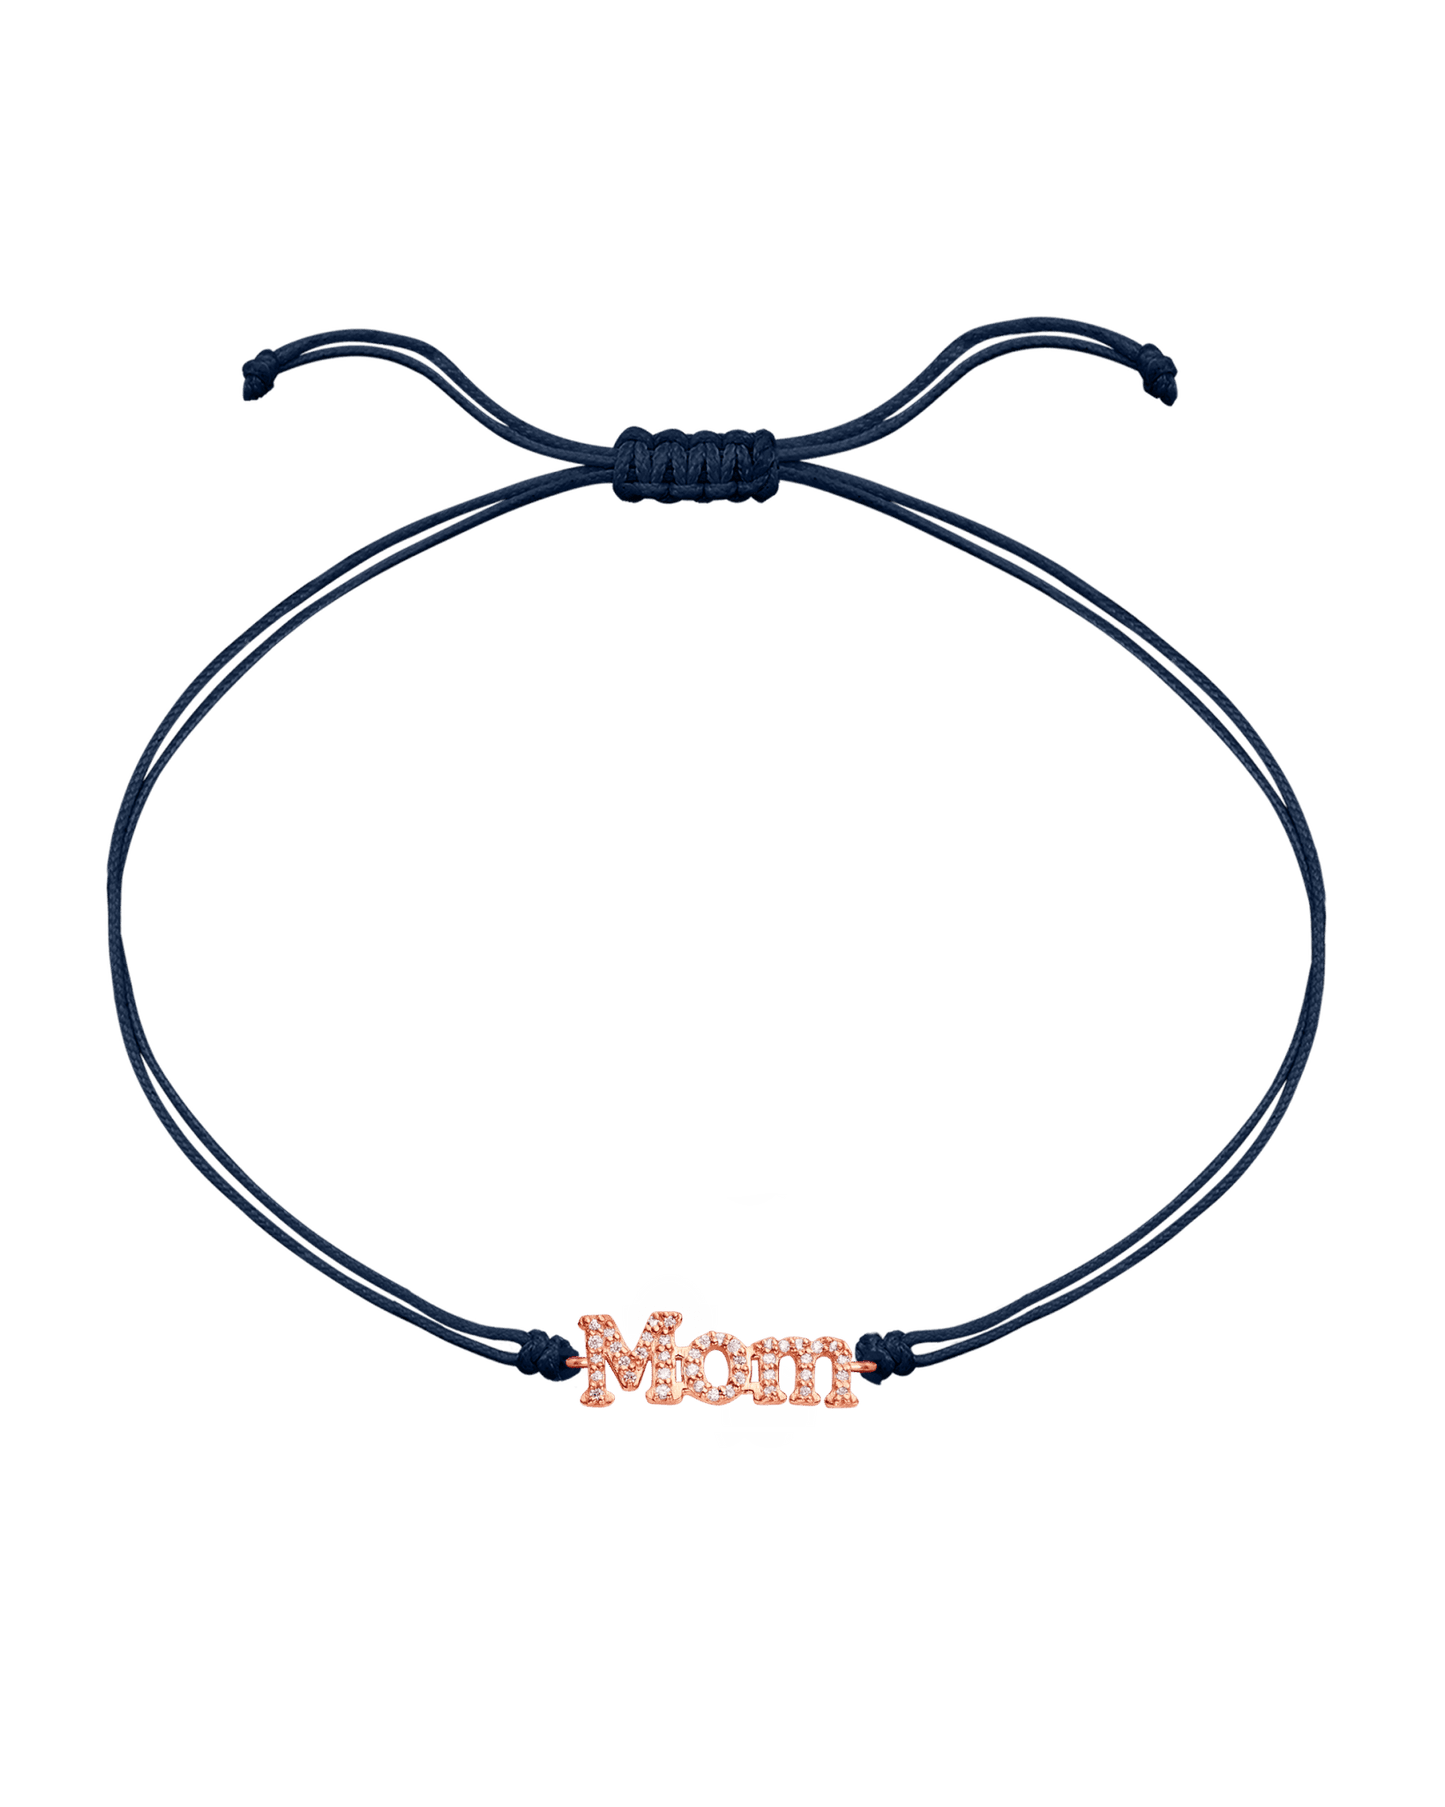 Mom String of Love - 14K Rose Gold Bracelets magal-dev Navy Blue Paved (+$120) 